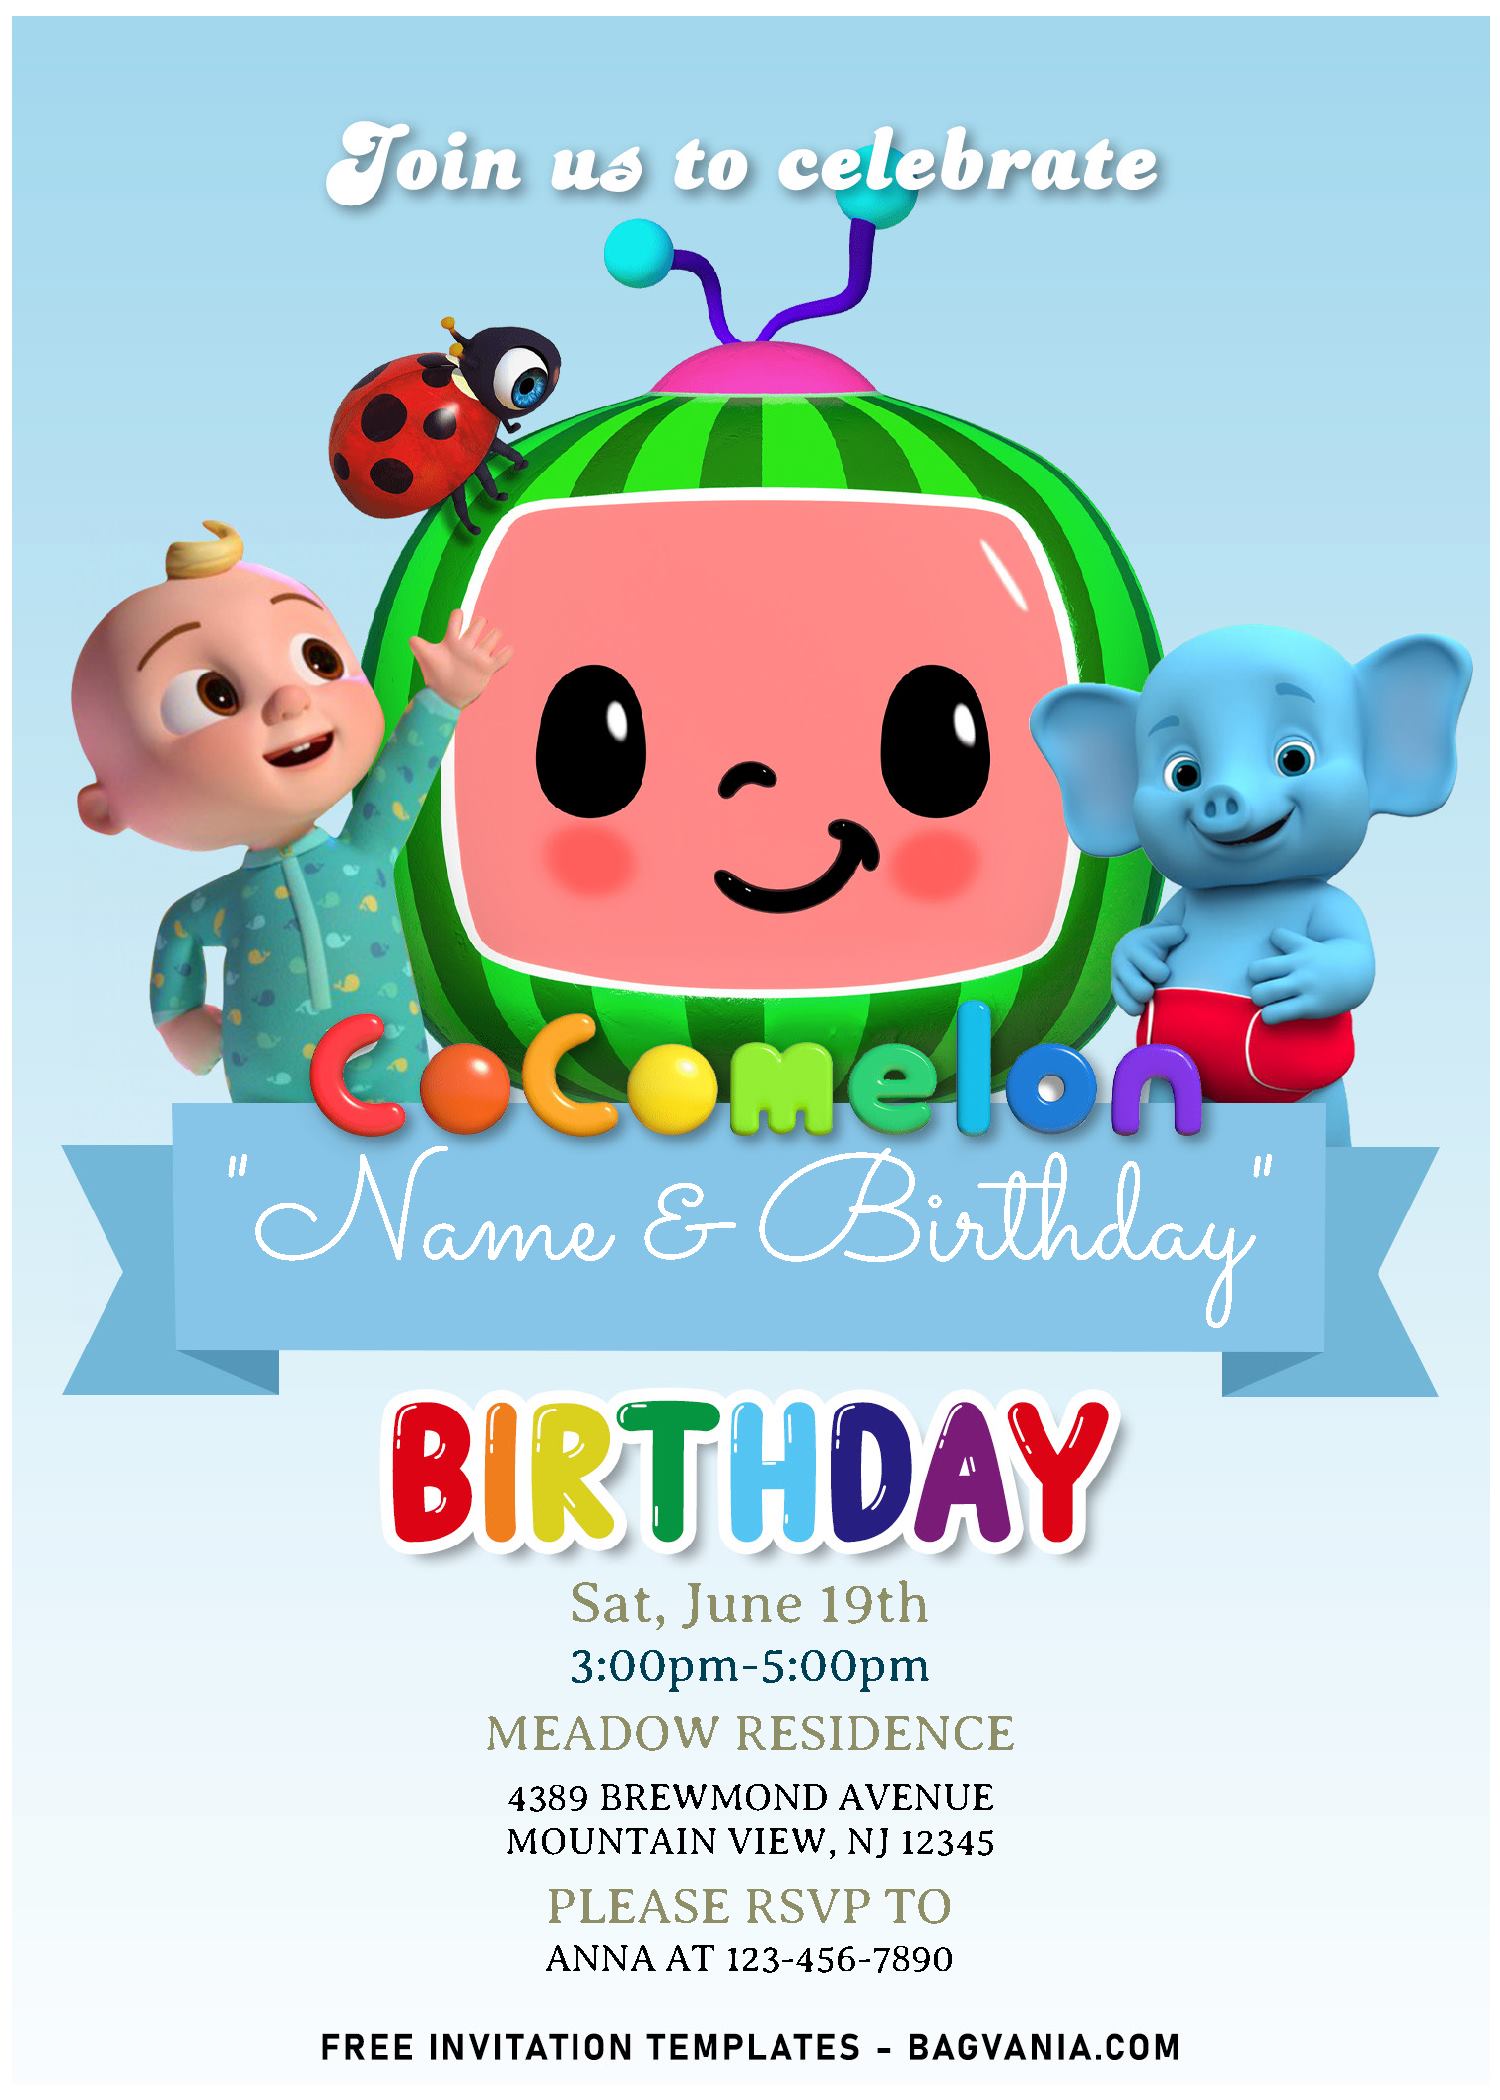 cocomelon-birthday-invitation-template-free